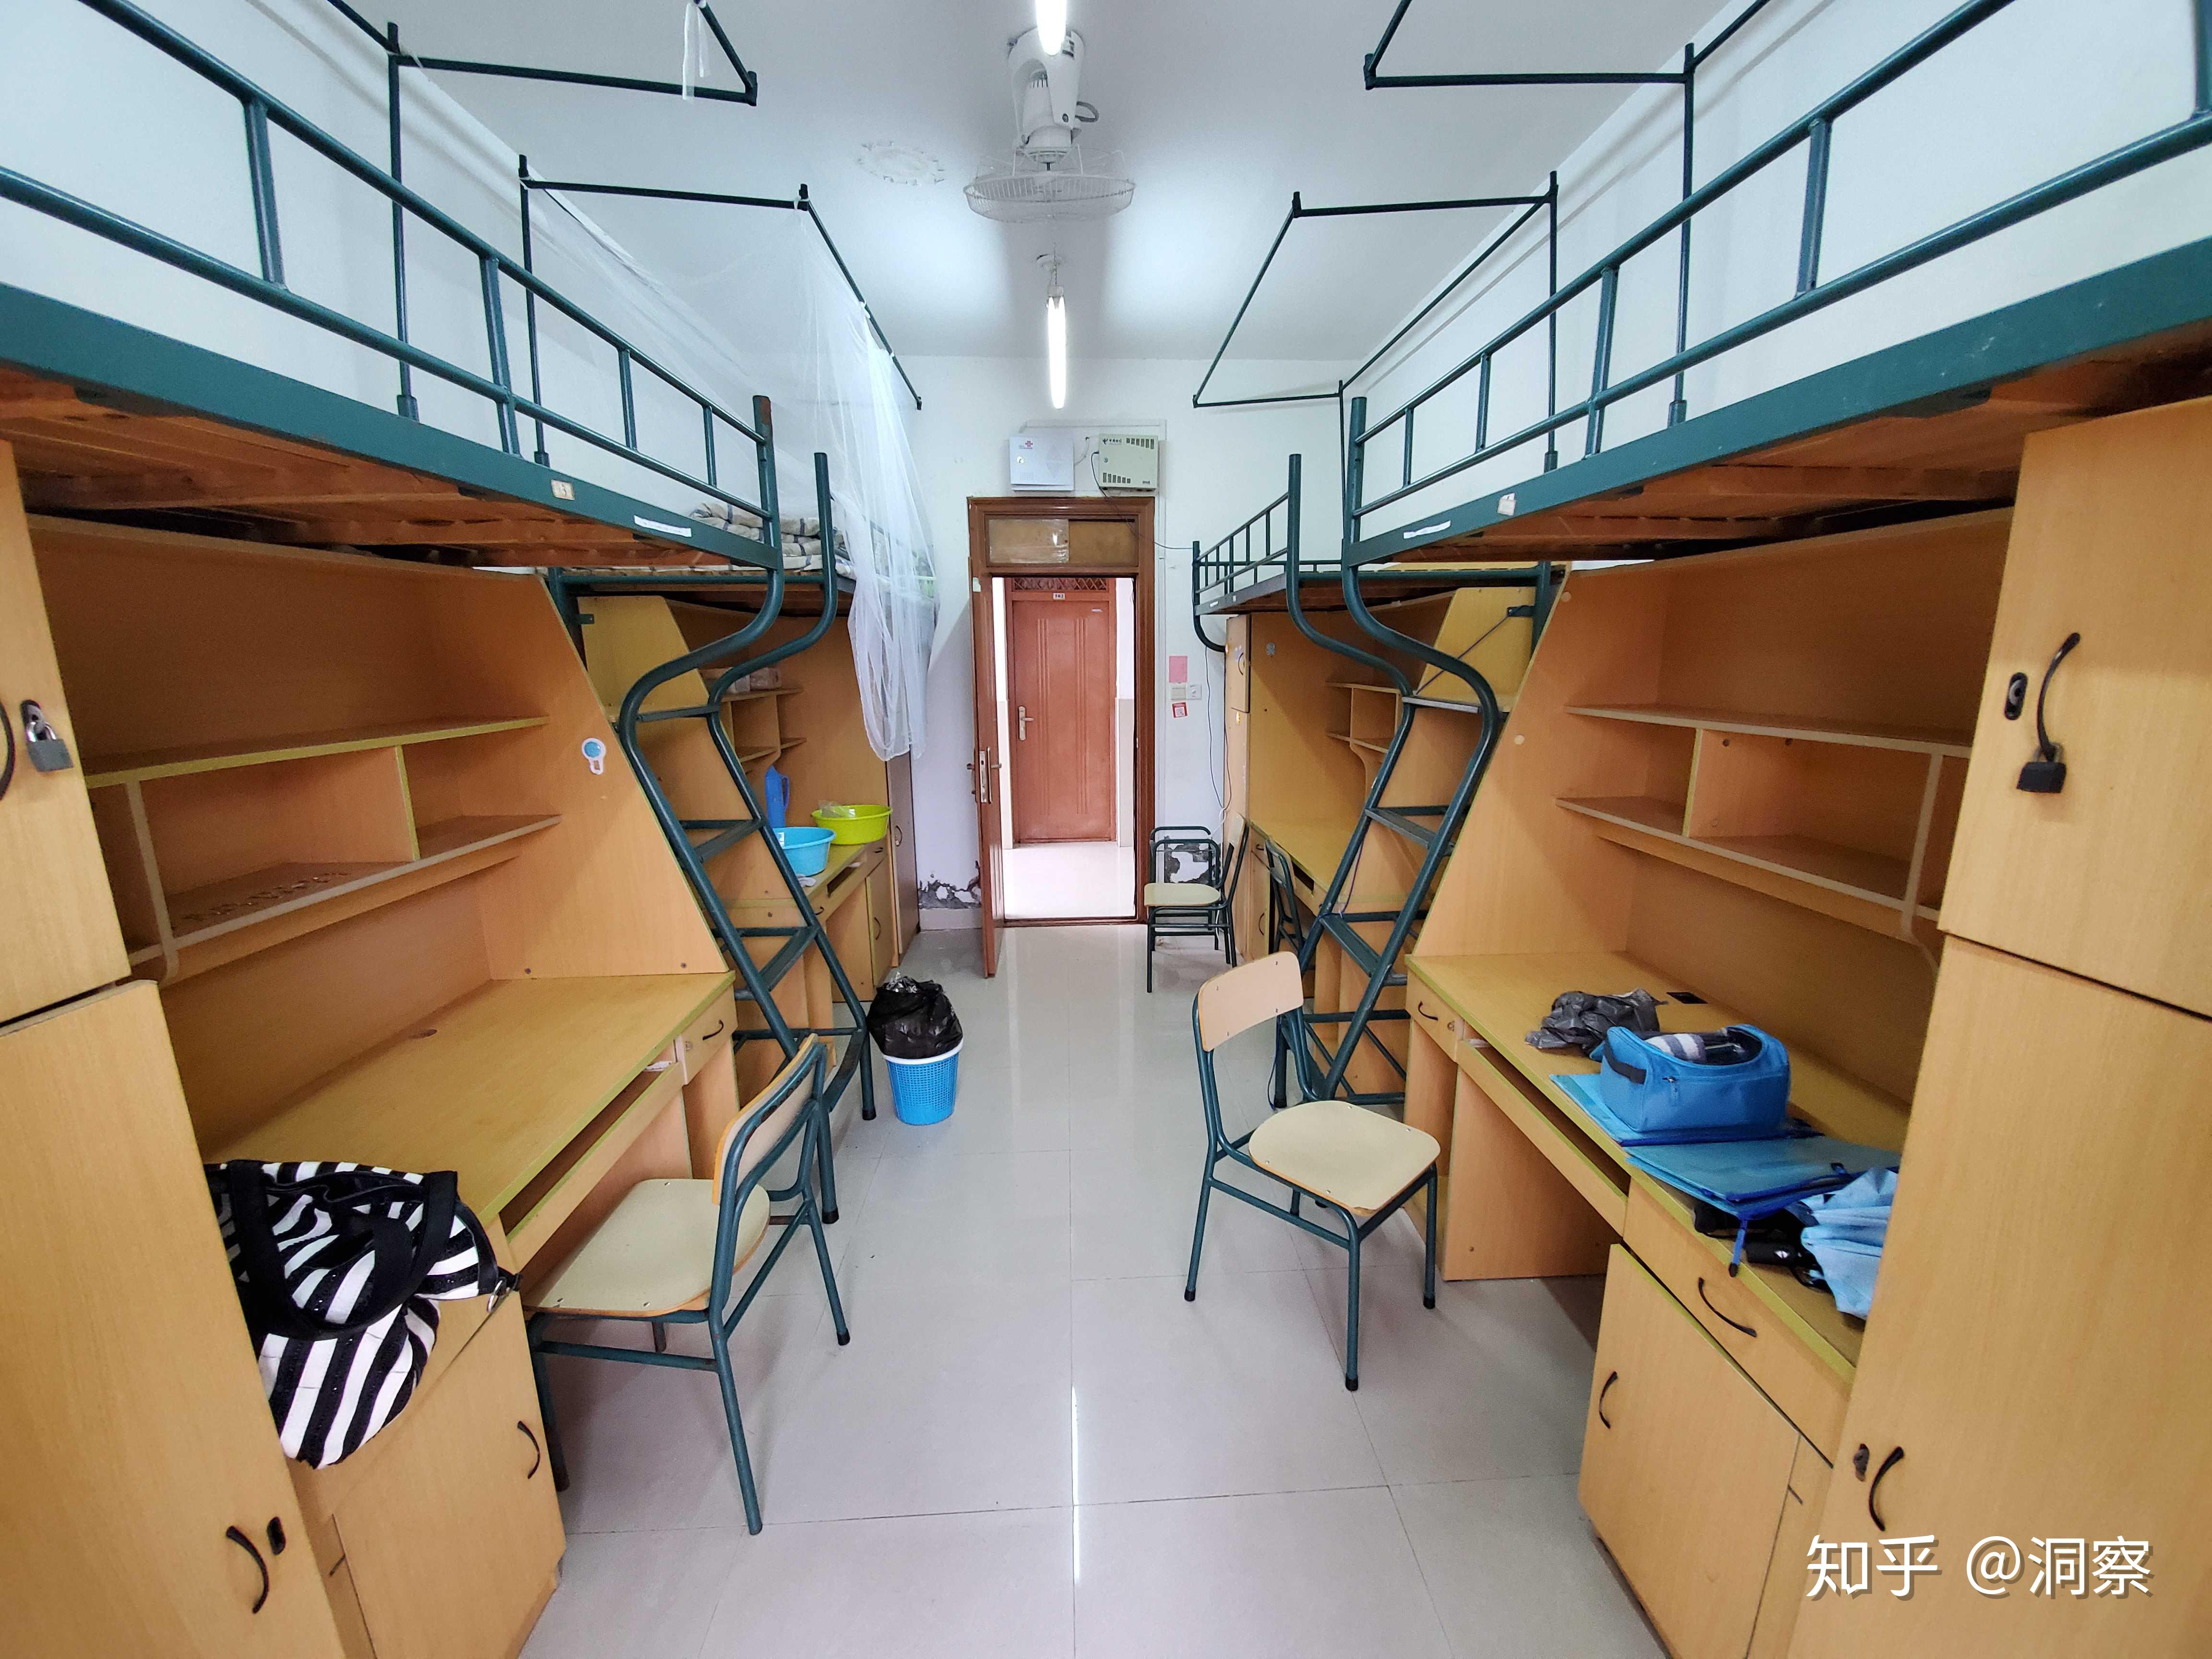 上海交通大学医学院宿舍图片,上海交通大学医学院宿舍条件及分配方法 - 上海高考 - 拽得网